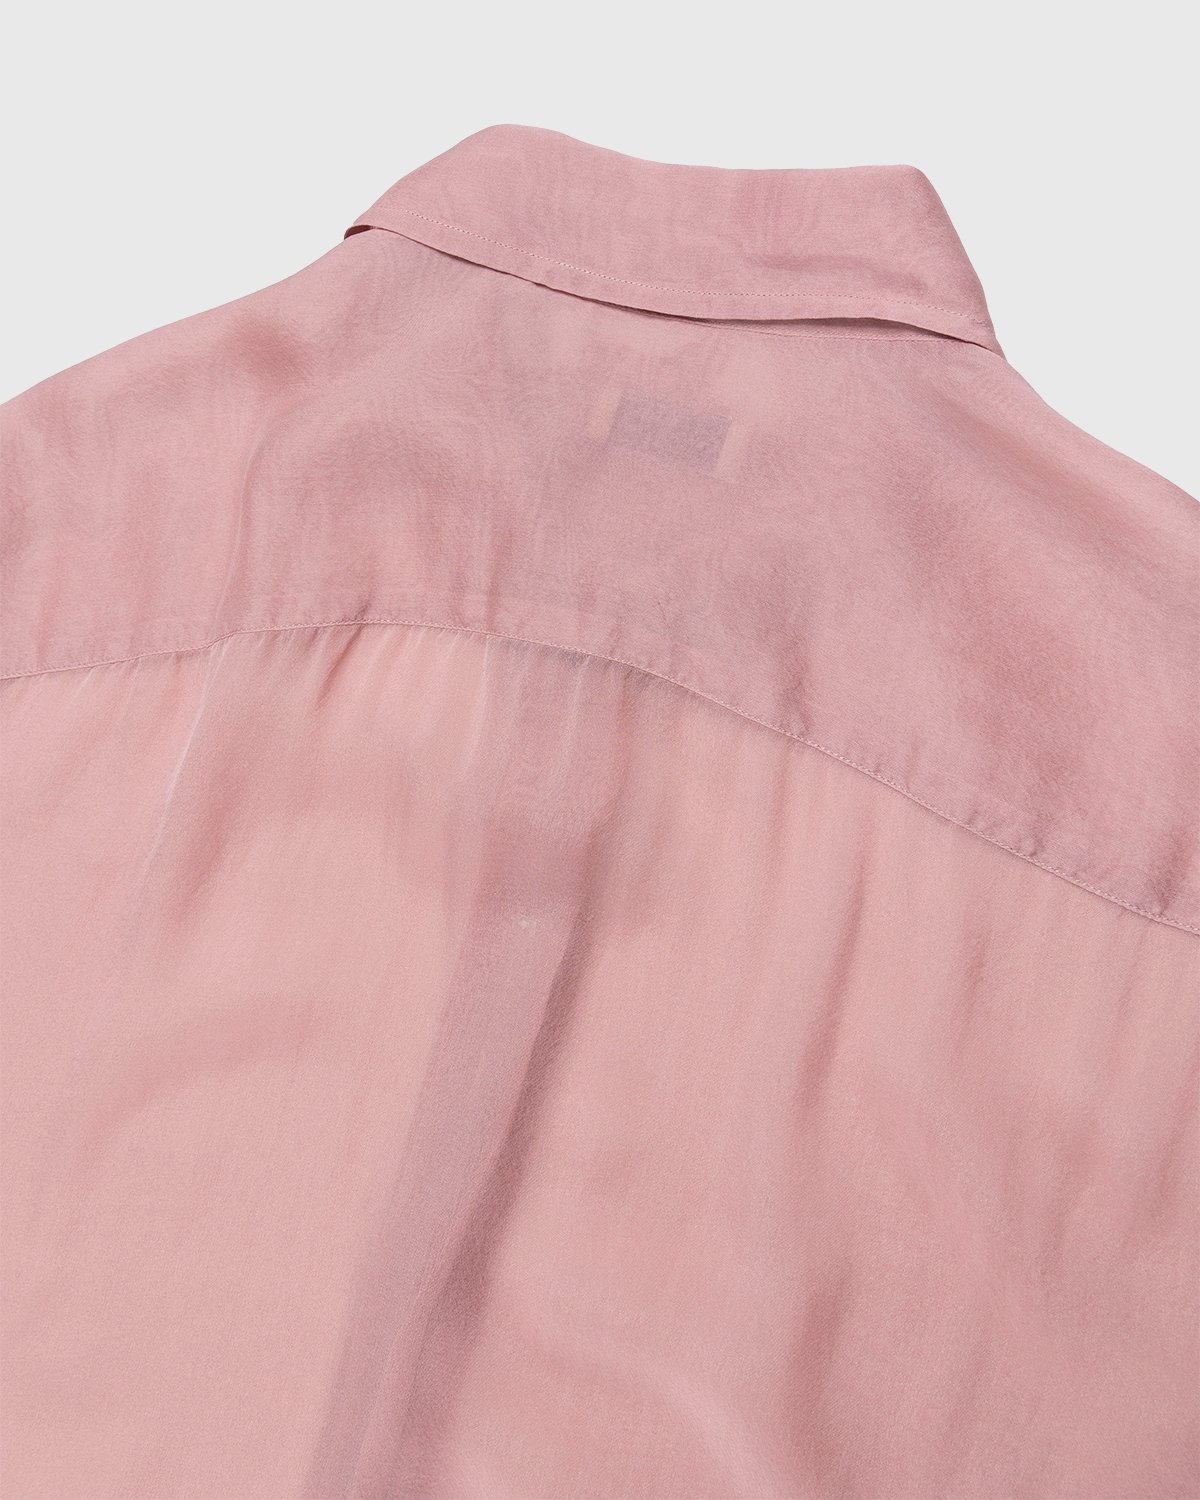 Dries van Noten - Cassidye Shirt Rose - Clothing - Pink - Image 5